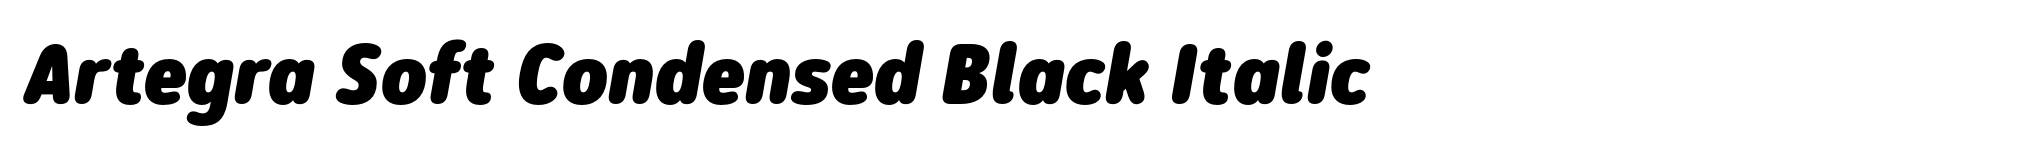 Artegra Soft Condensed Black Italic image